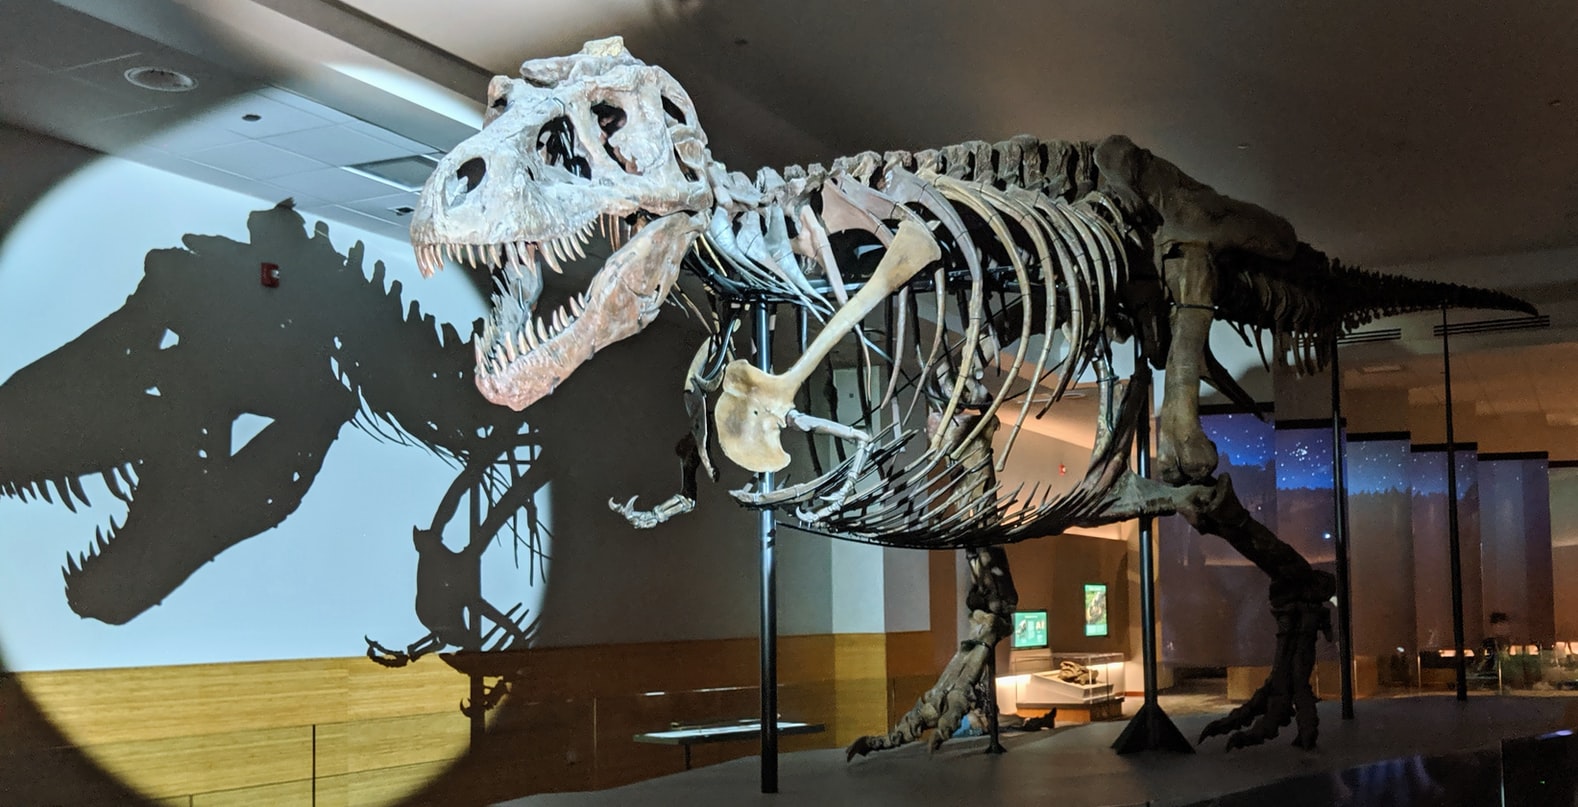 Squelette de dinosaure exposé dans un musée